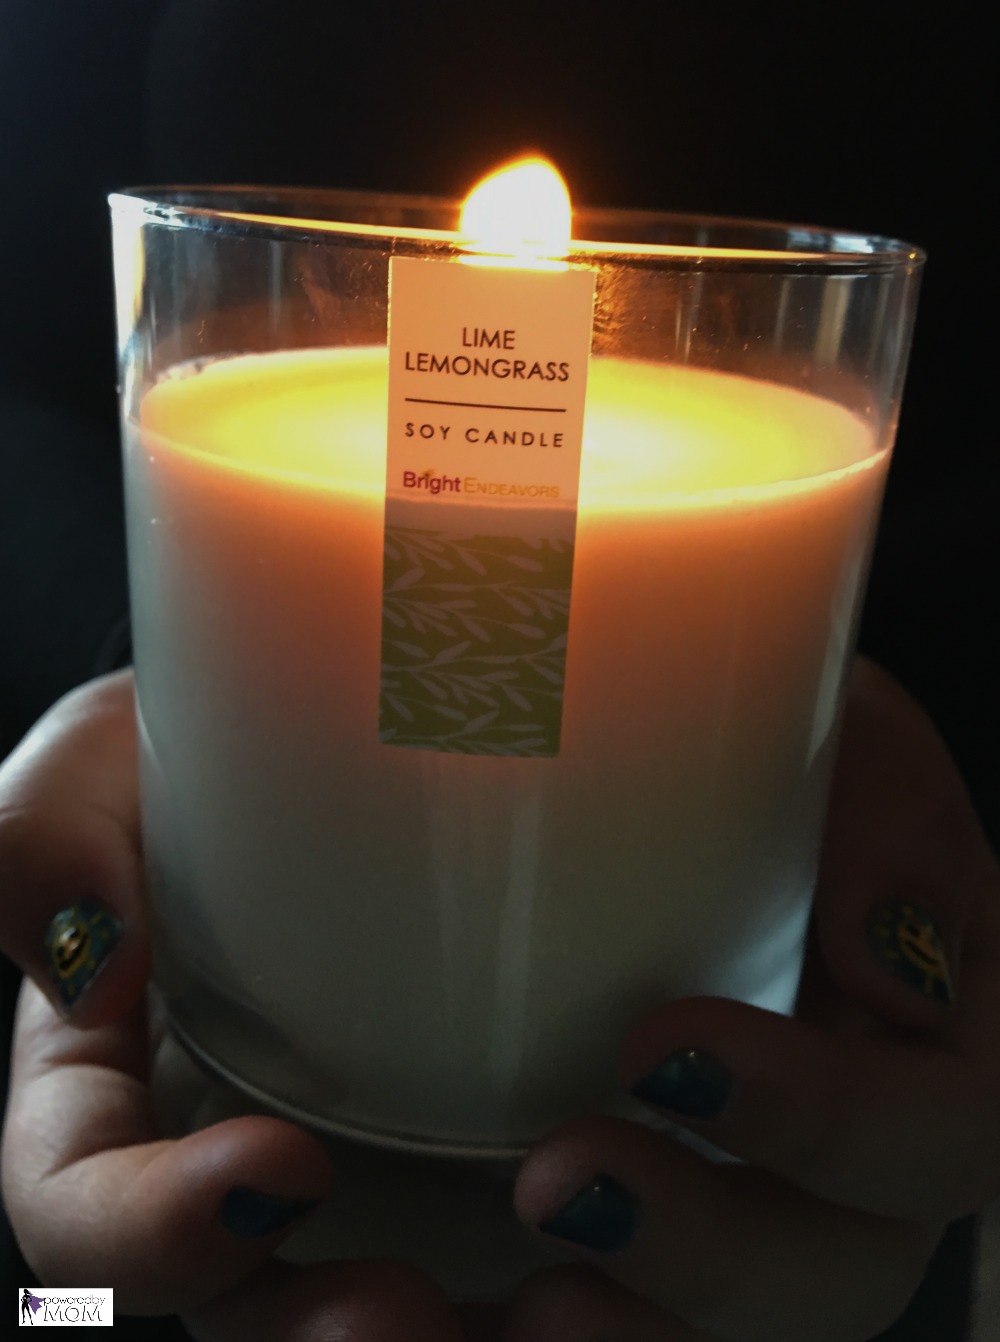 Lime Lemongrass candle